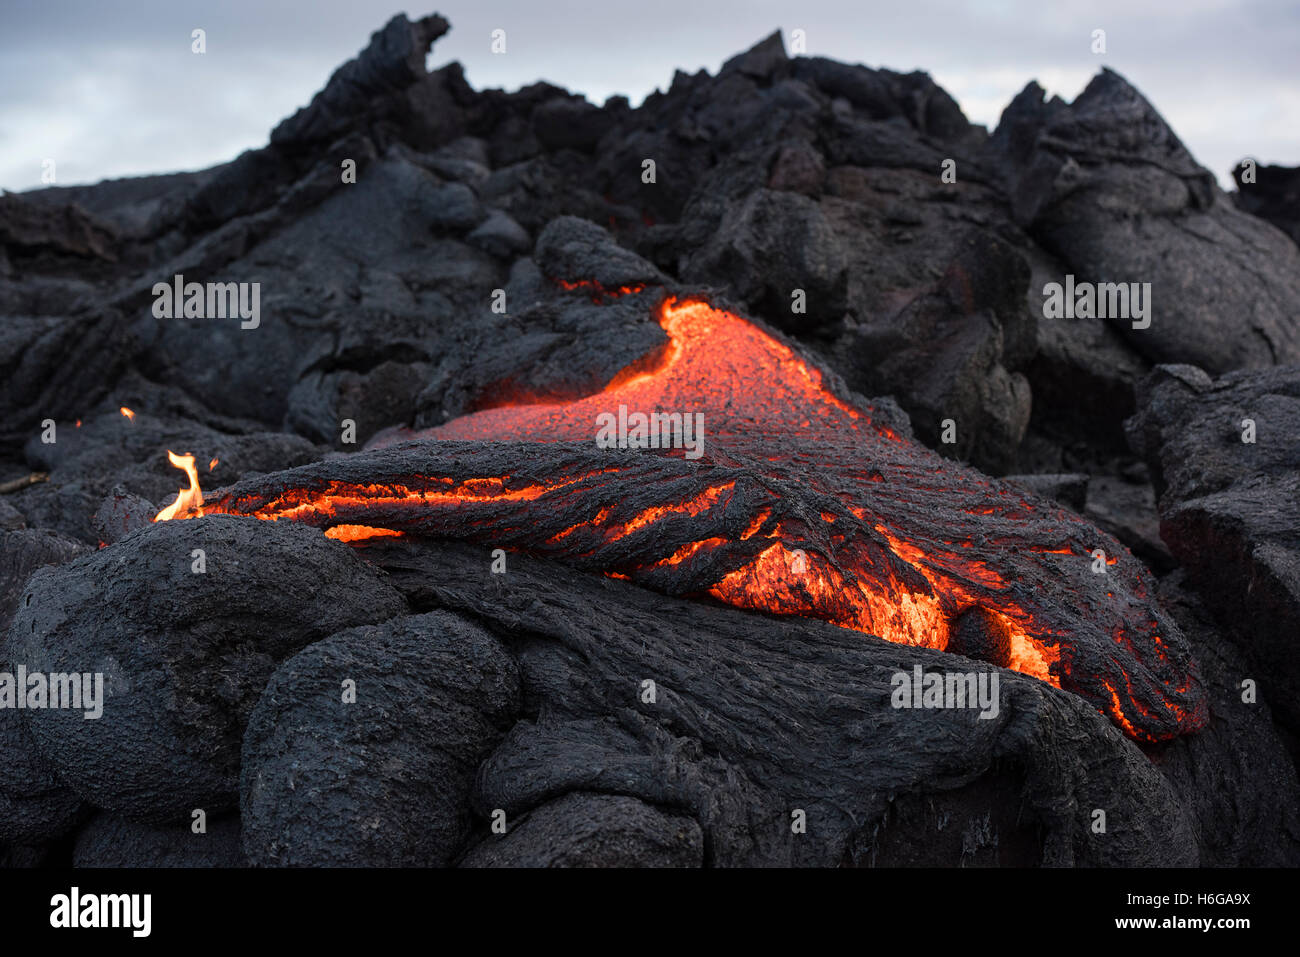 Pahoehoe lava à partir de la 61G flow, Kilauea Volcano, suinte d'un breakout à Hawaii Volcanoes National Park, California, USA Banque D'Images